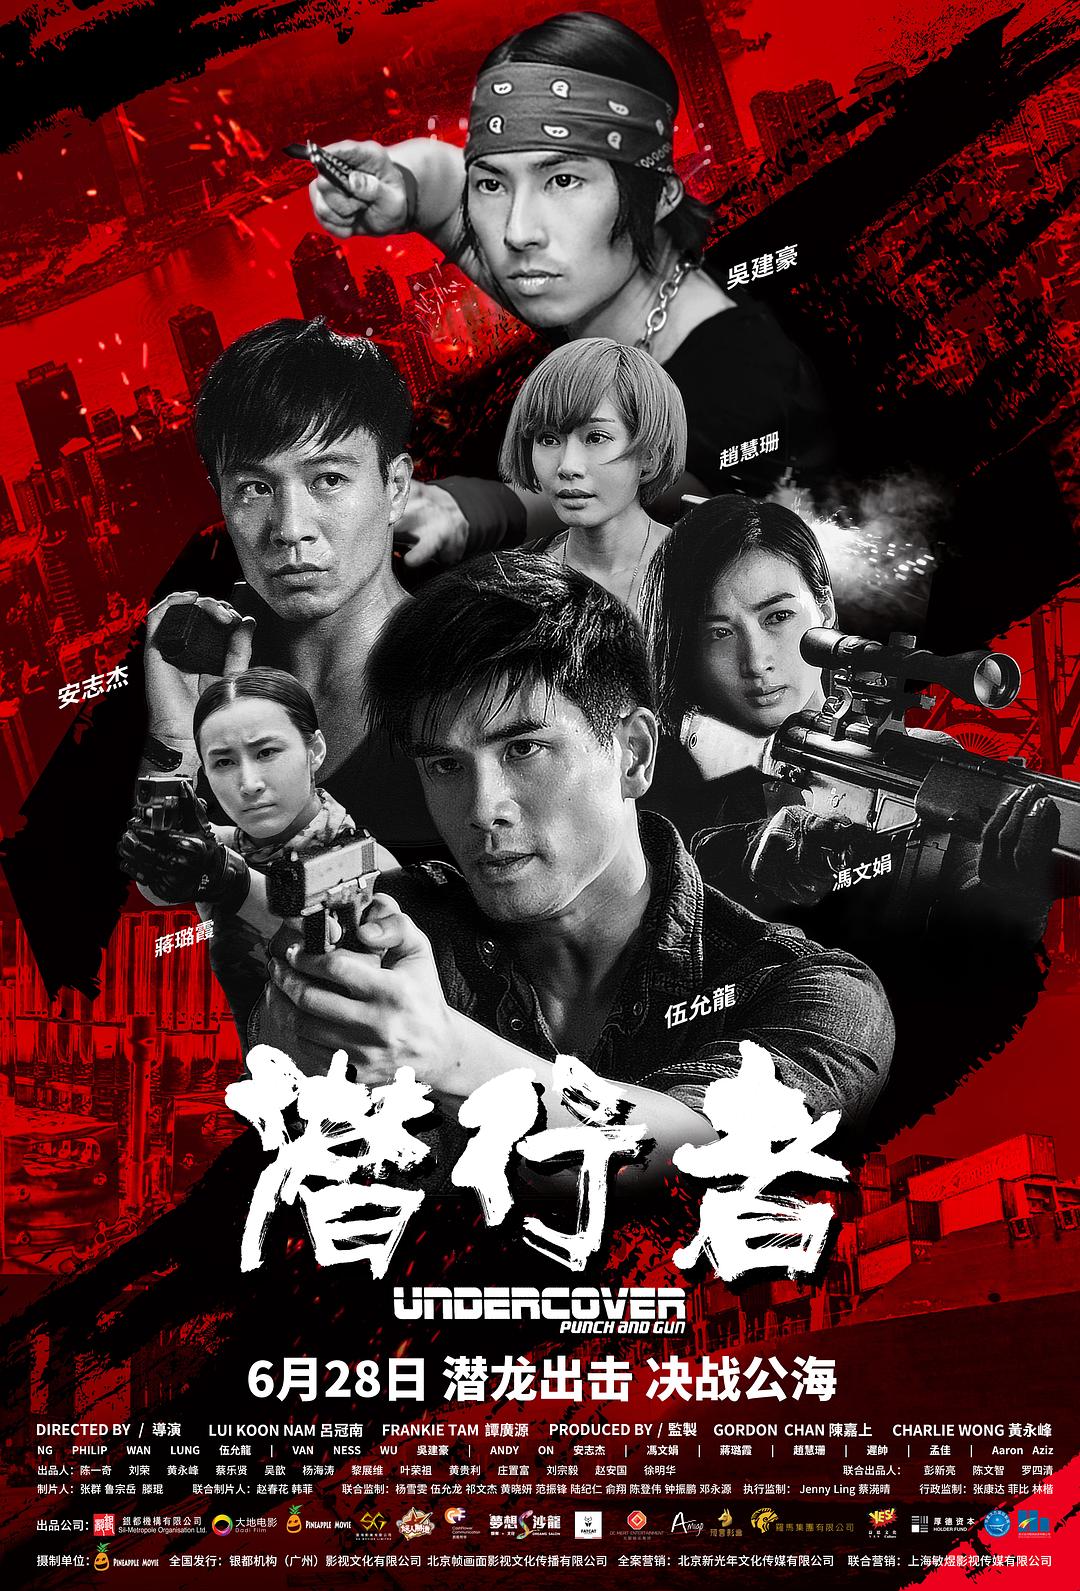 潜行者 Undercover.Punch.and.Gun.2019.CHINESE.1080p.BluRay.REMUX.AVC.DTS-HD.MA.TrueHD.5.1-FGT 25.48GB-1.png